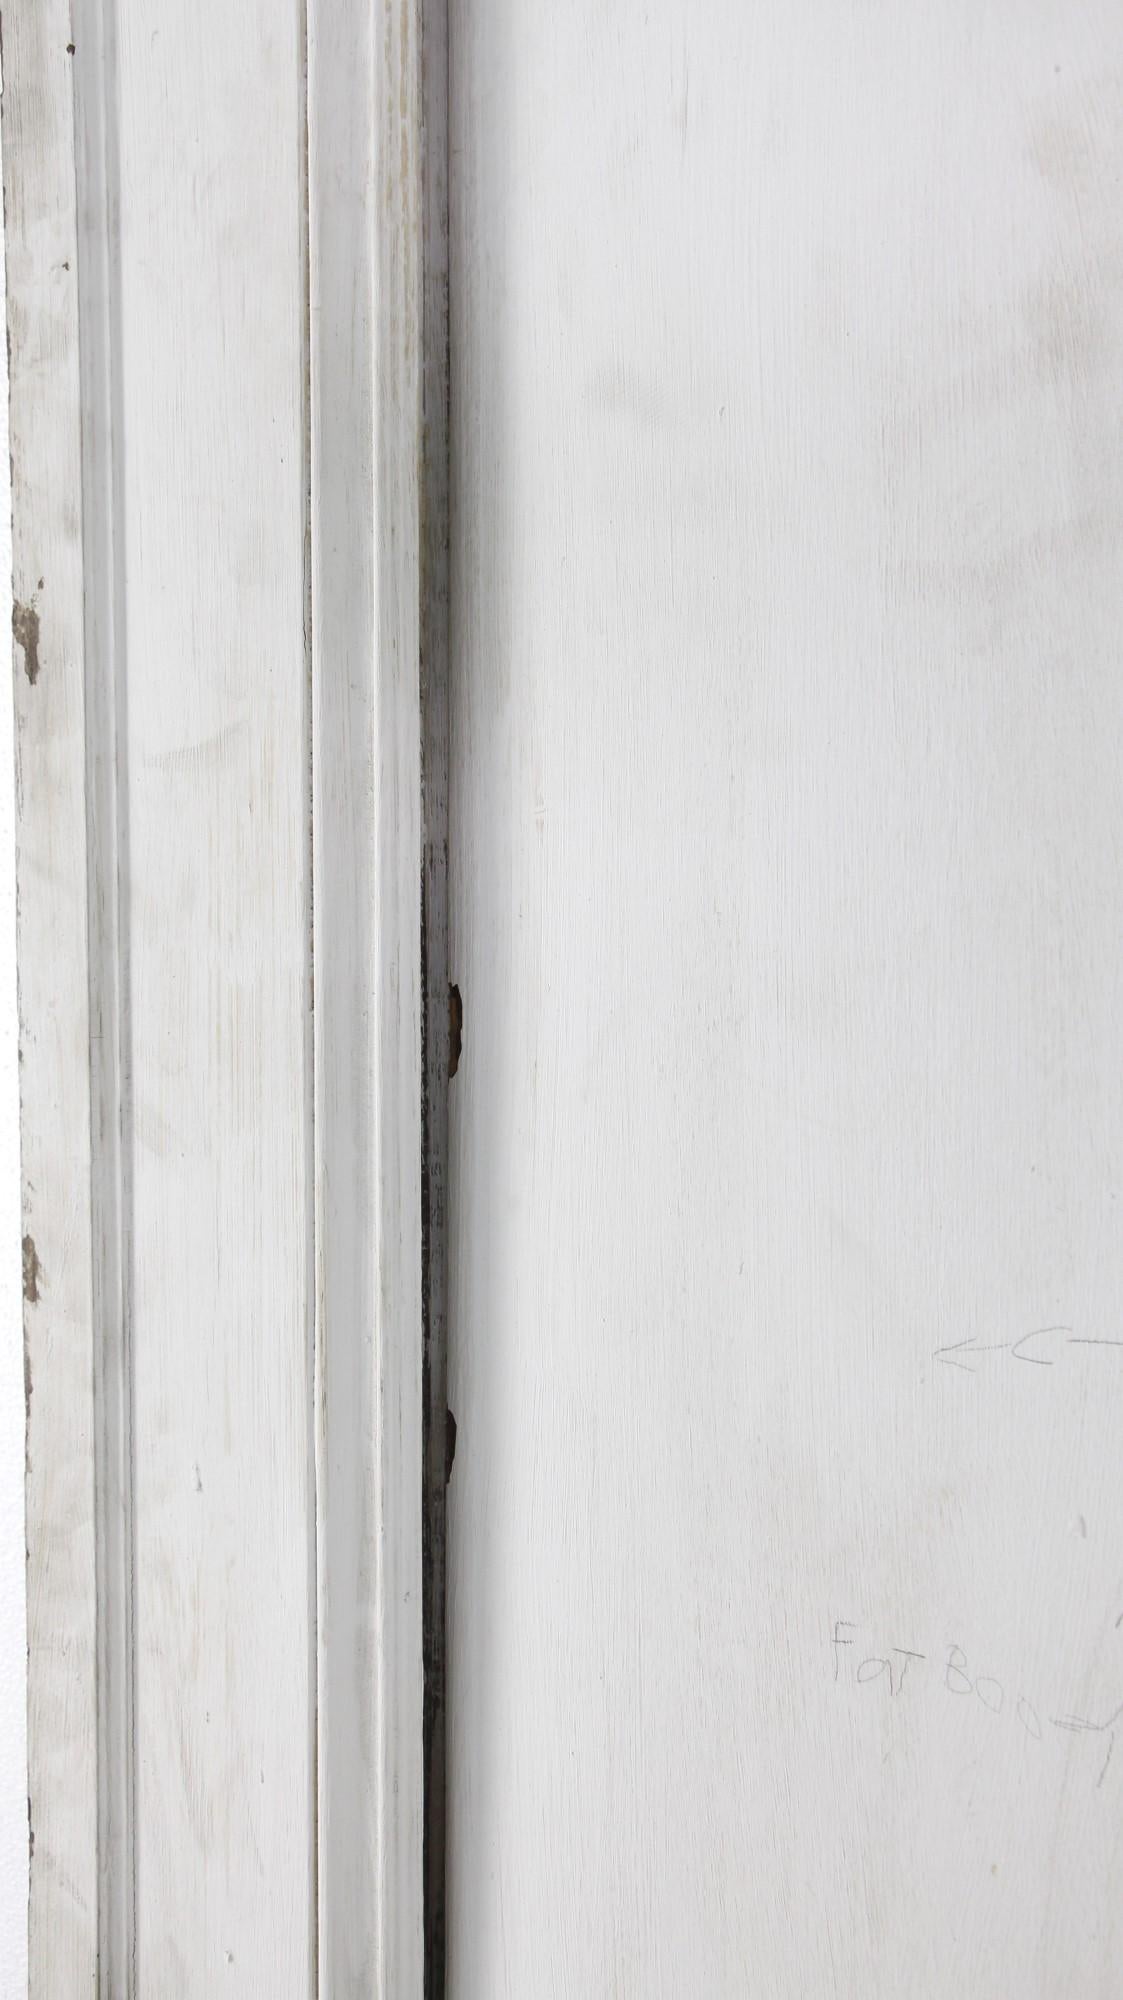 American Set of Pocket Doors w/ Dark Tone Wood & One Side Painted White